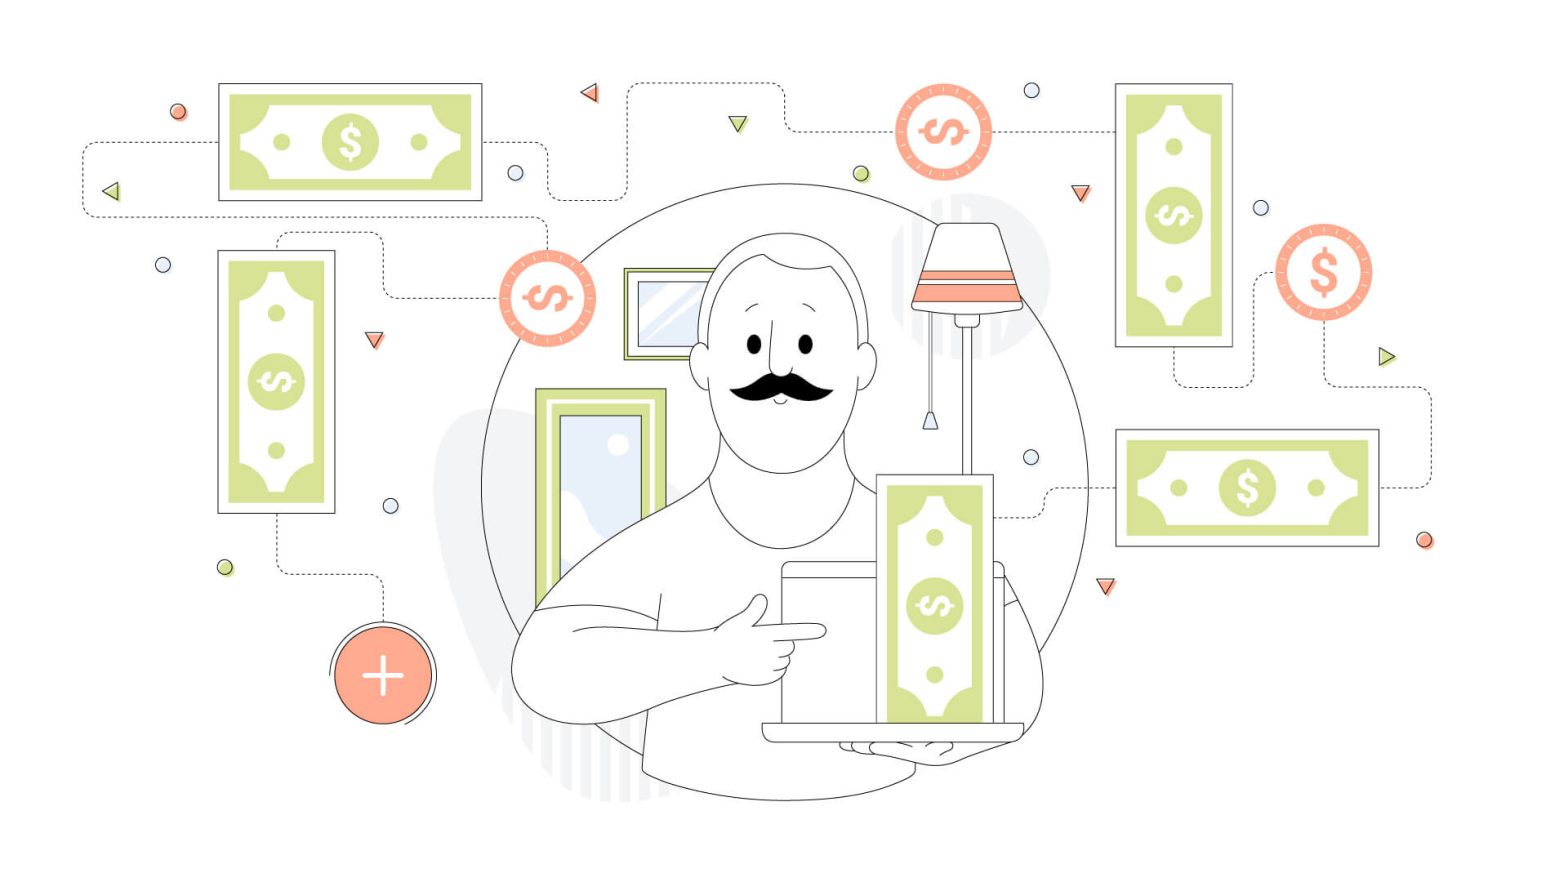 13 ways to make money online